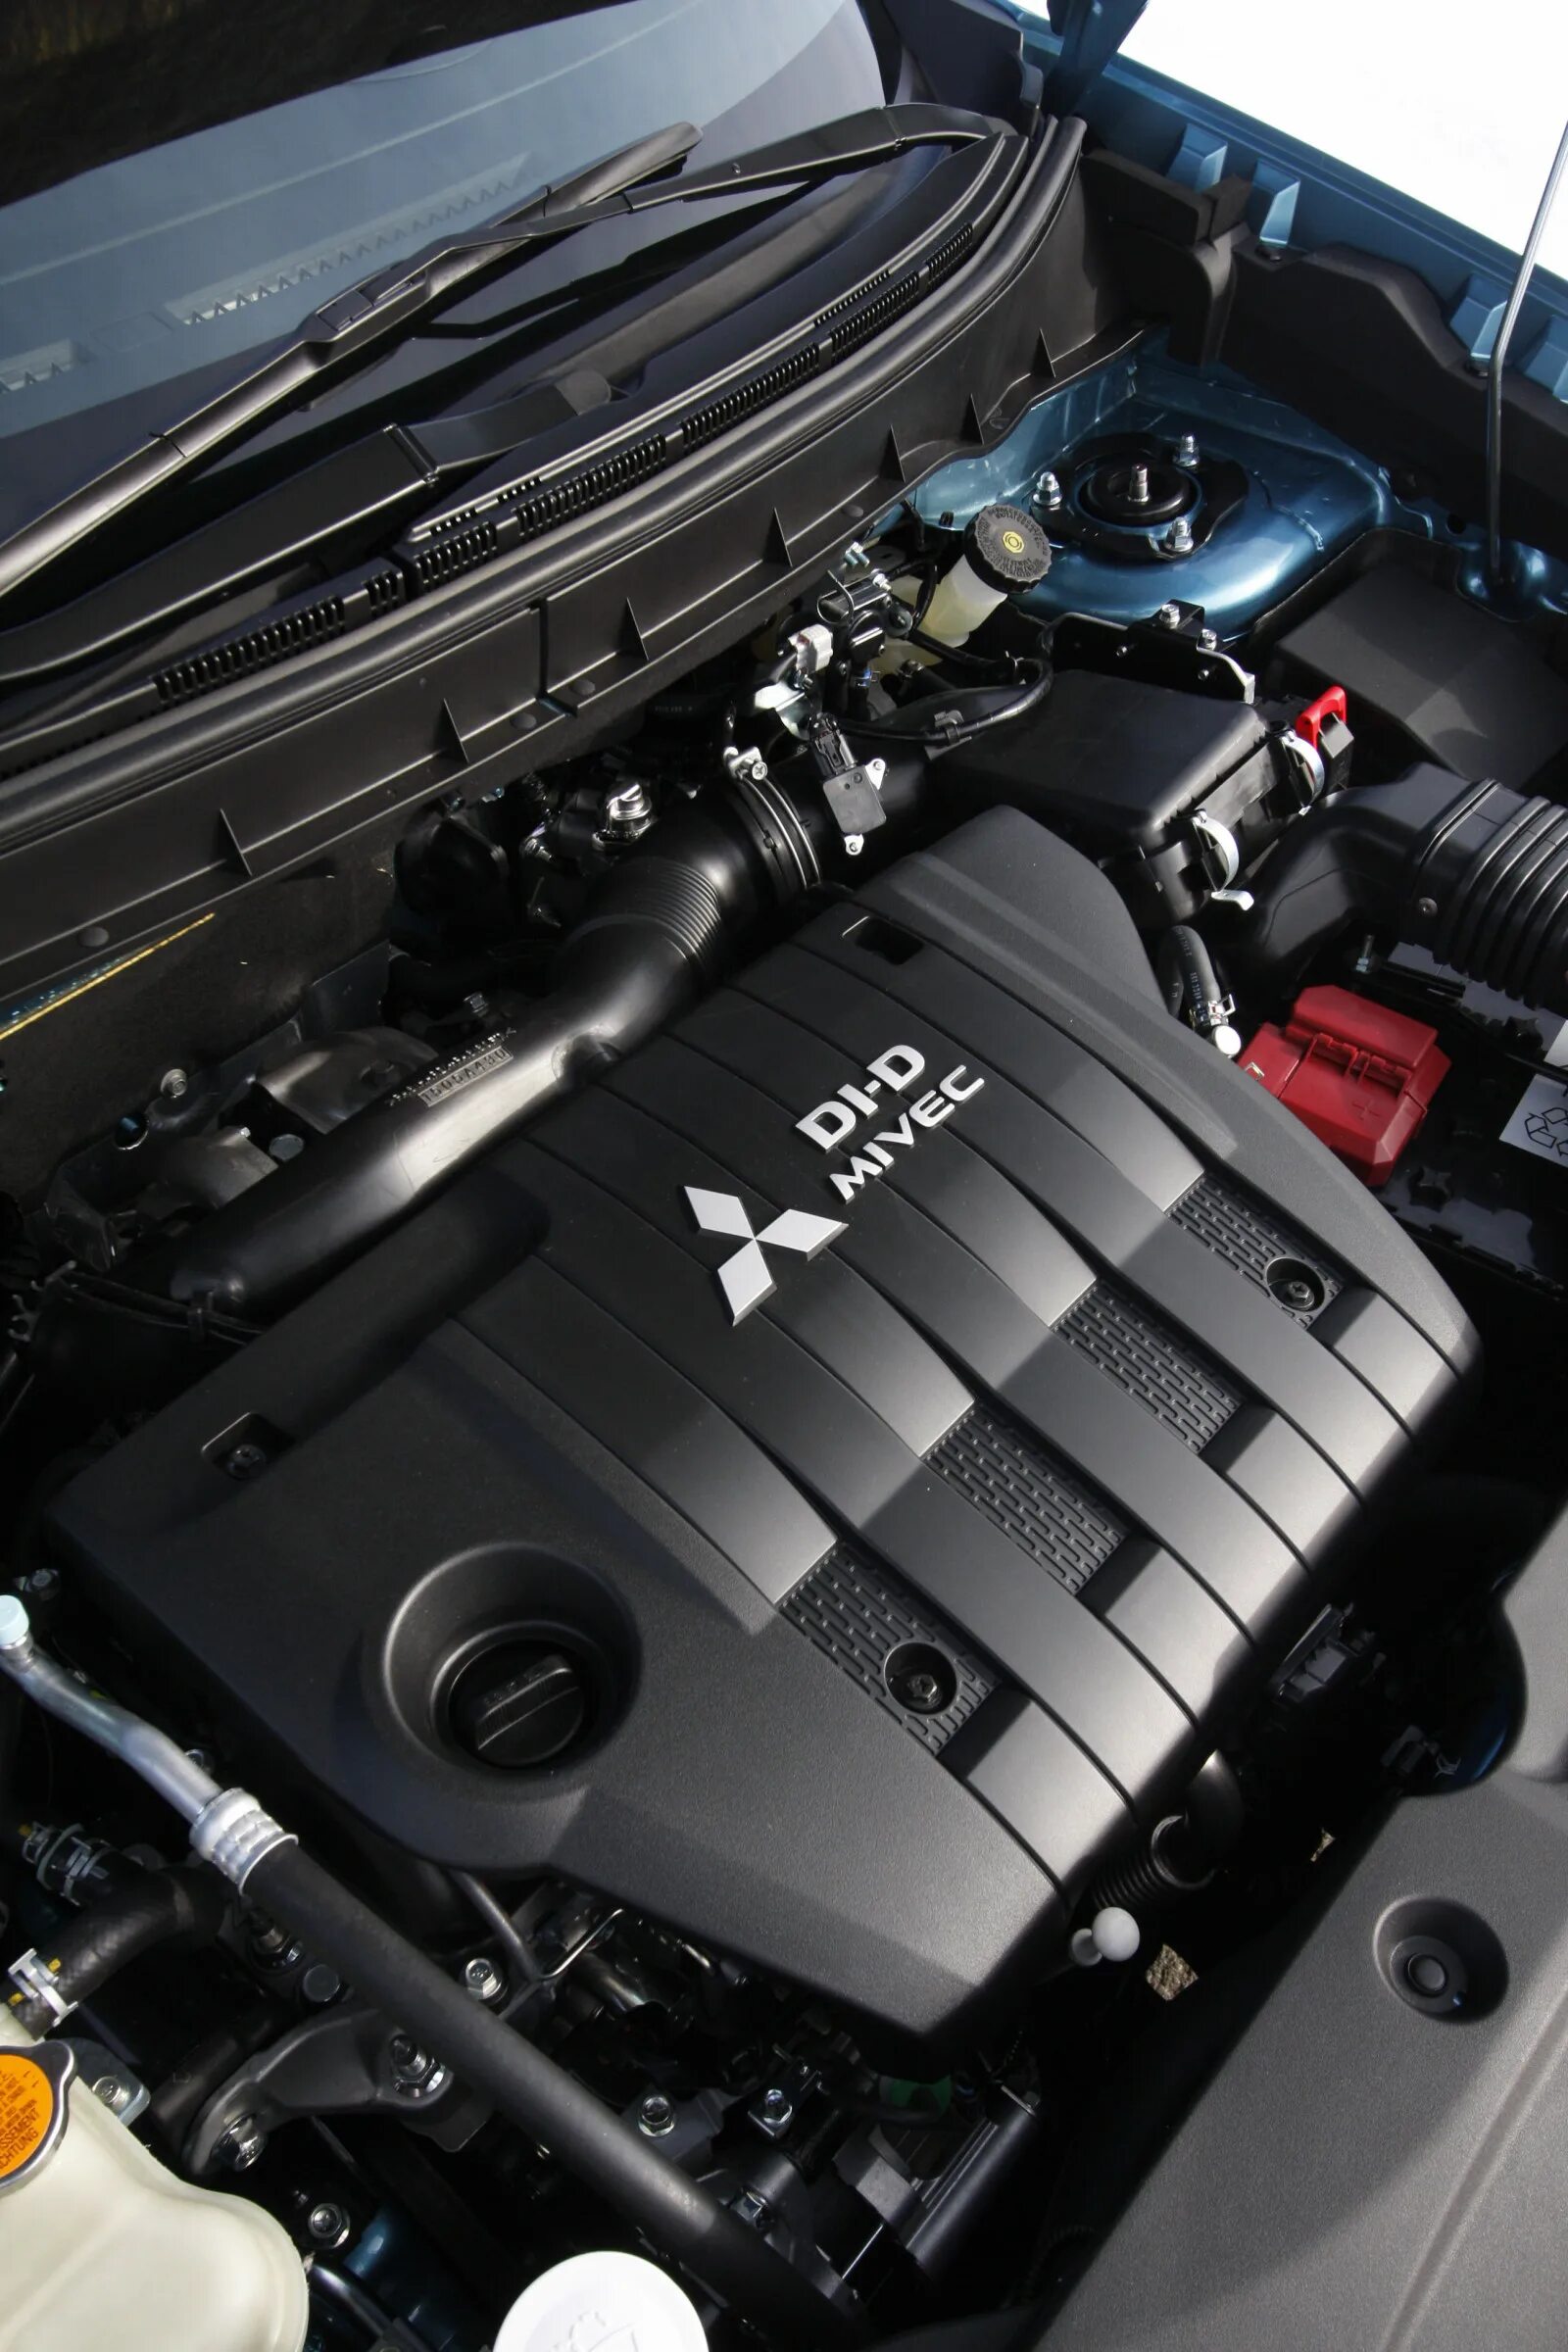 Митсубиси асх какой двигатель. Двигатель Mitsubishi ASX 1.6 2013. Mitsubishi ASX 1.8 двигатель. ASX 2013 1.8 двигатель. Мотор ASX 1.8.